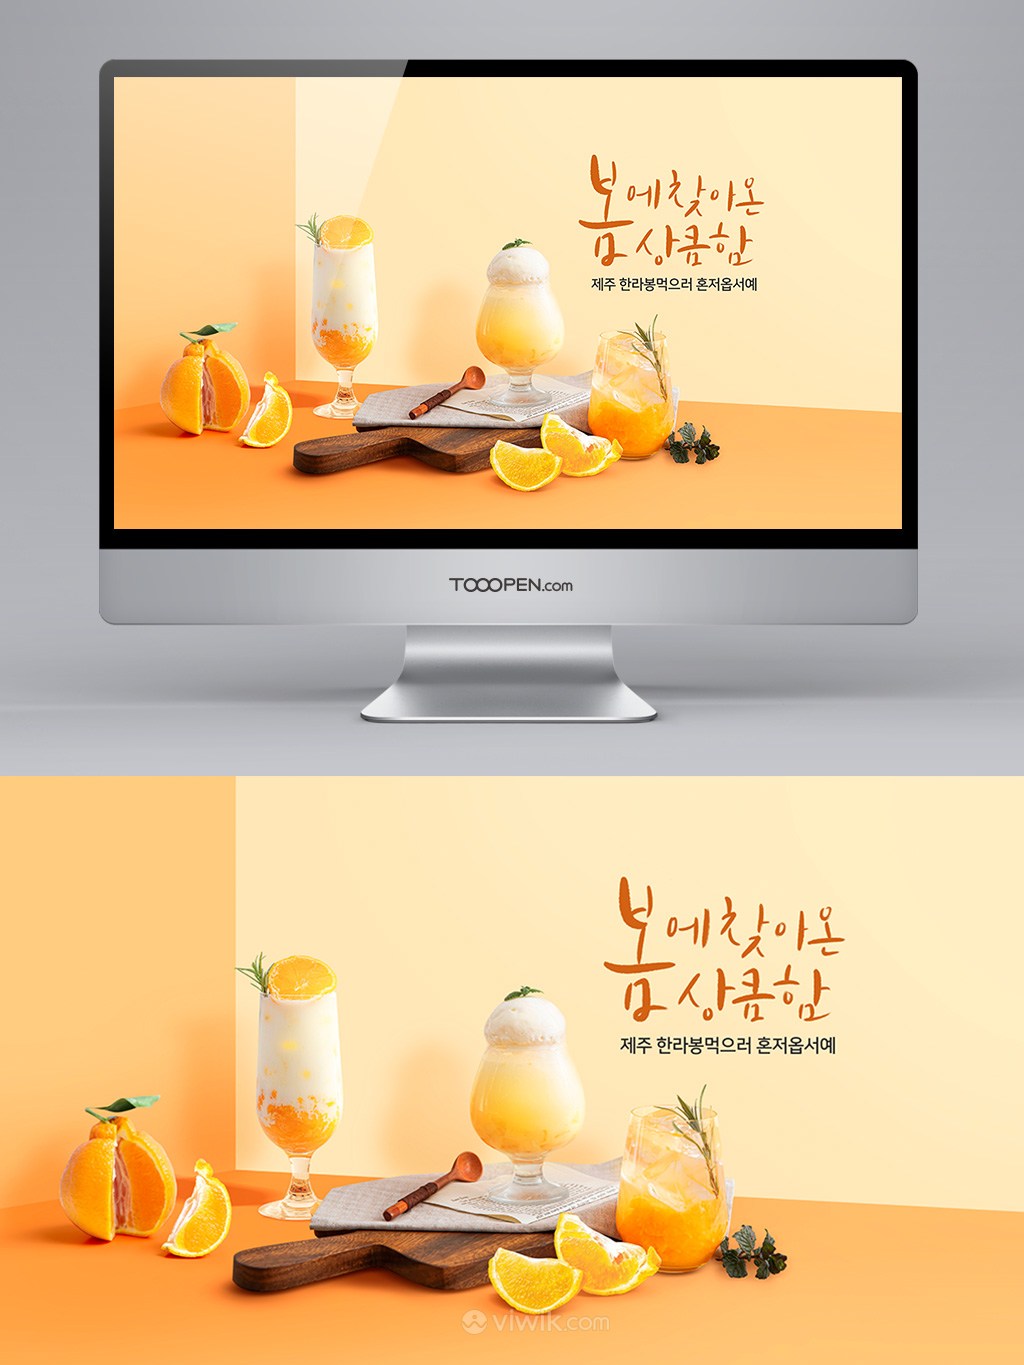 夏日橙子果汁饮料广告banner设计模板